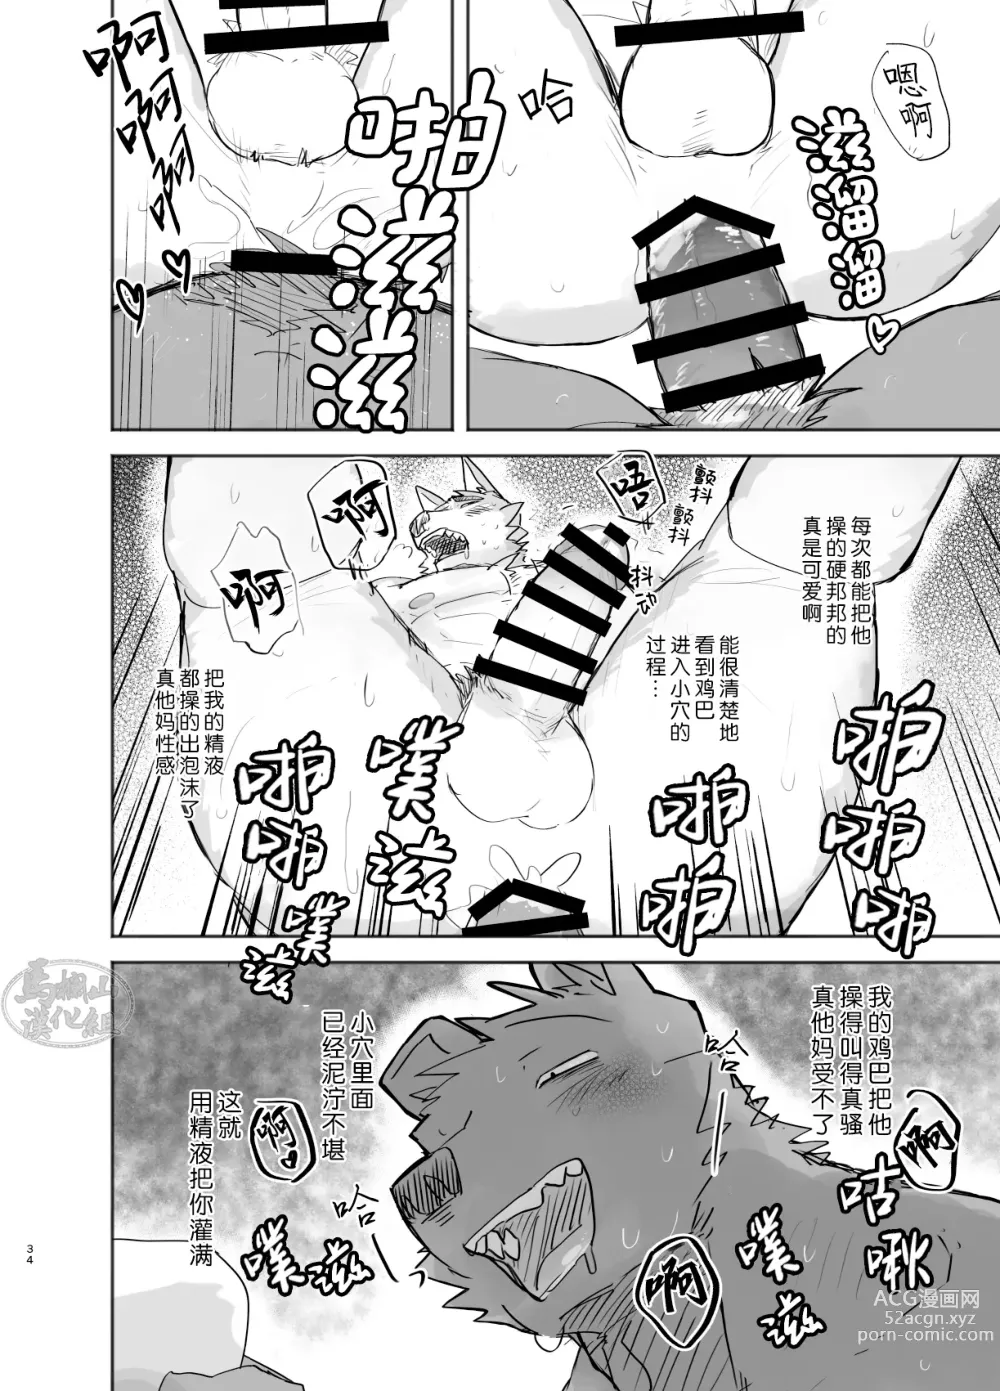 Page 34 of doujinshi 温泉野合时